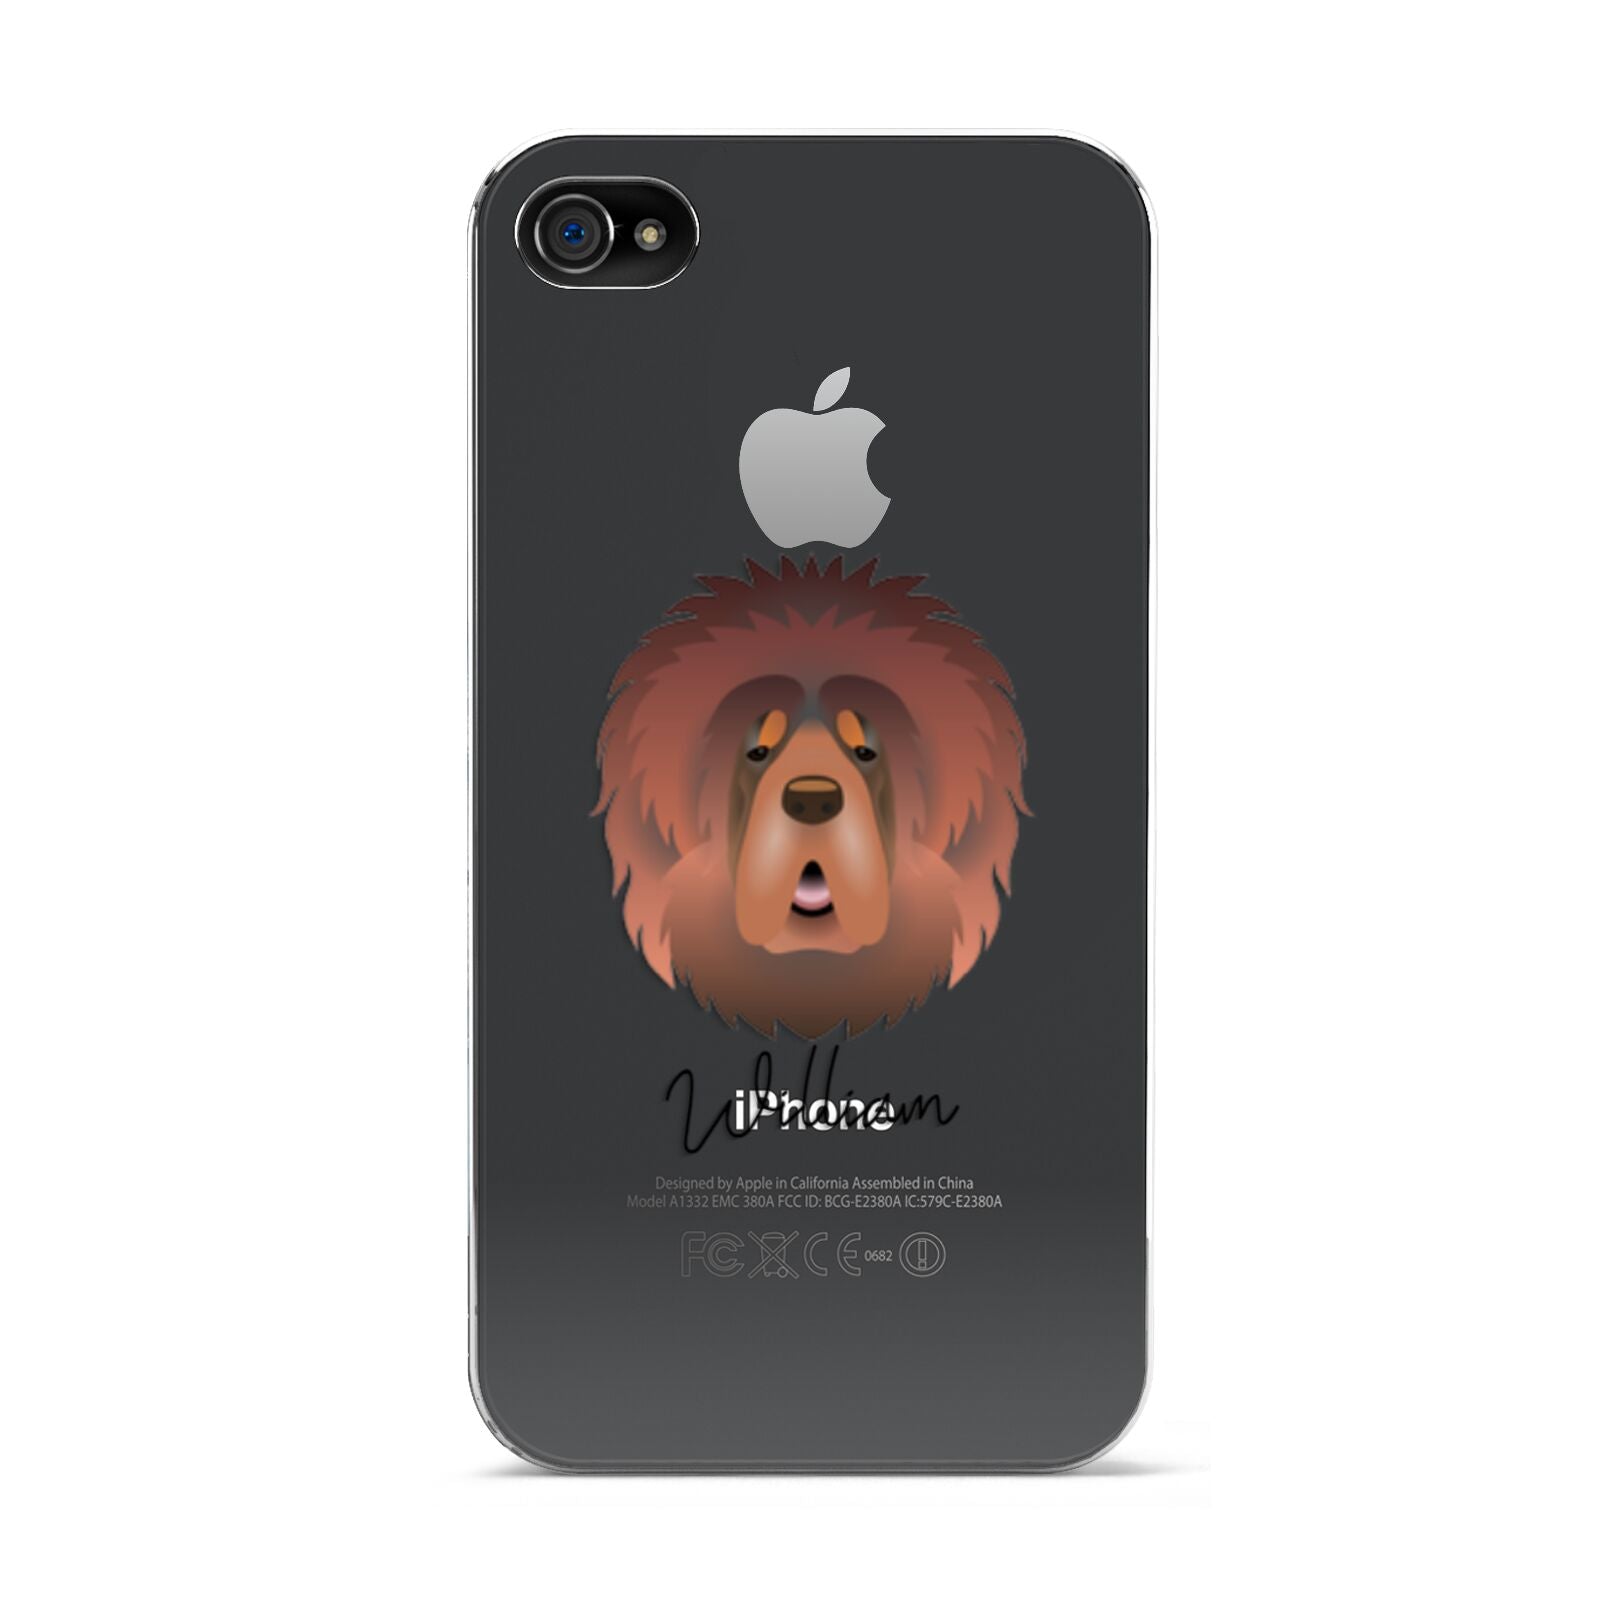 Tibetan Mastiff Personalised Apple iPhone 4s Case